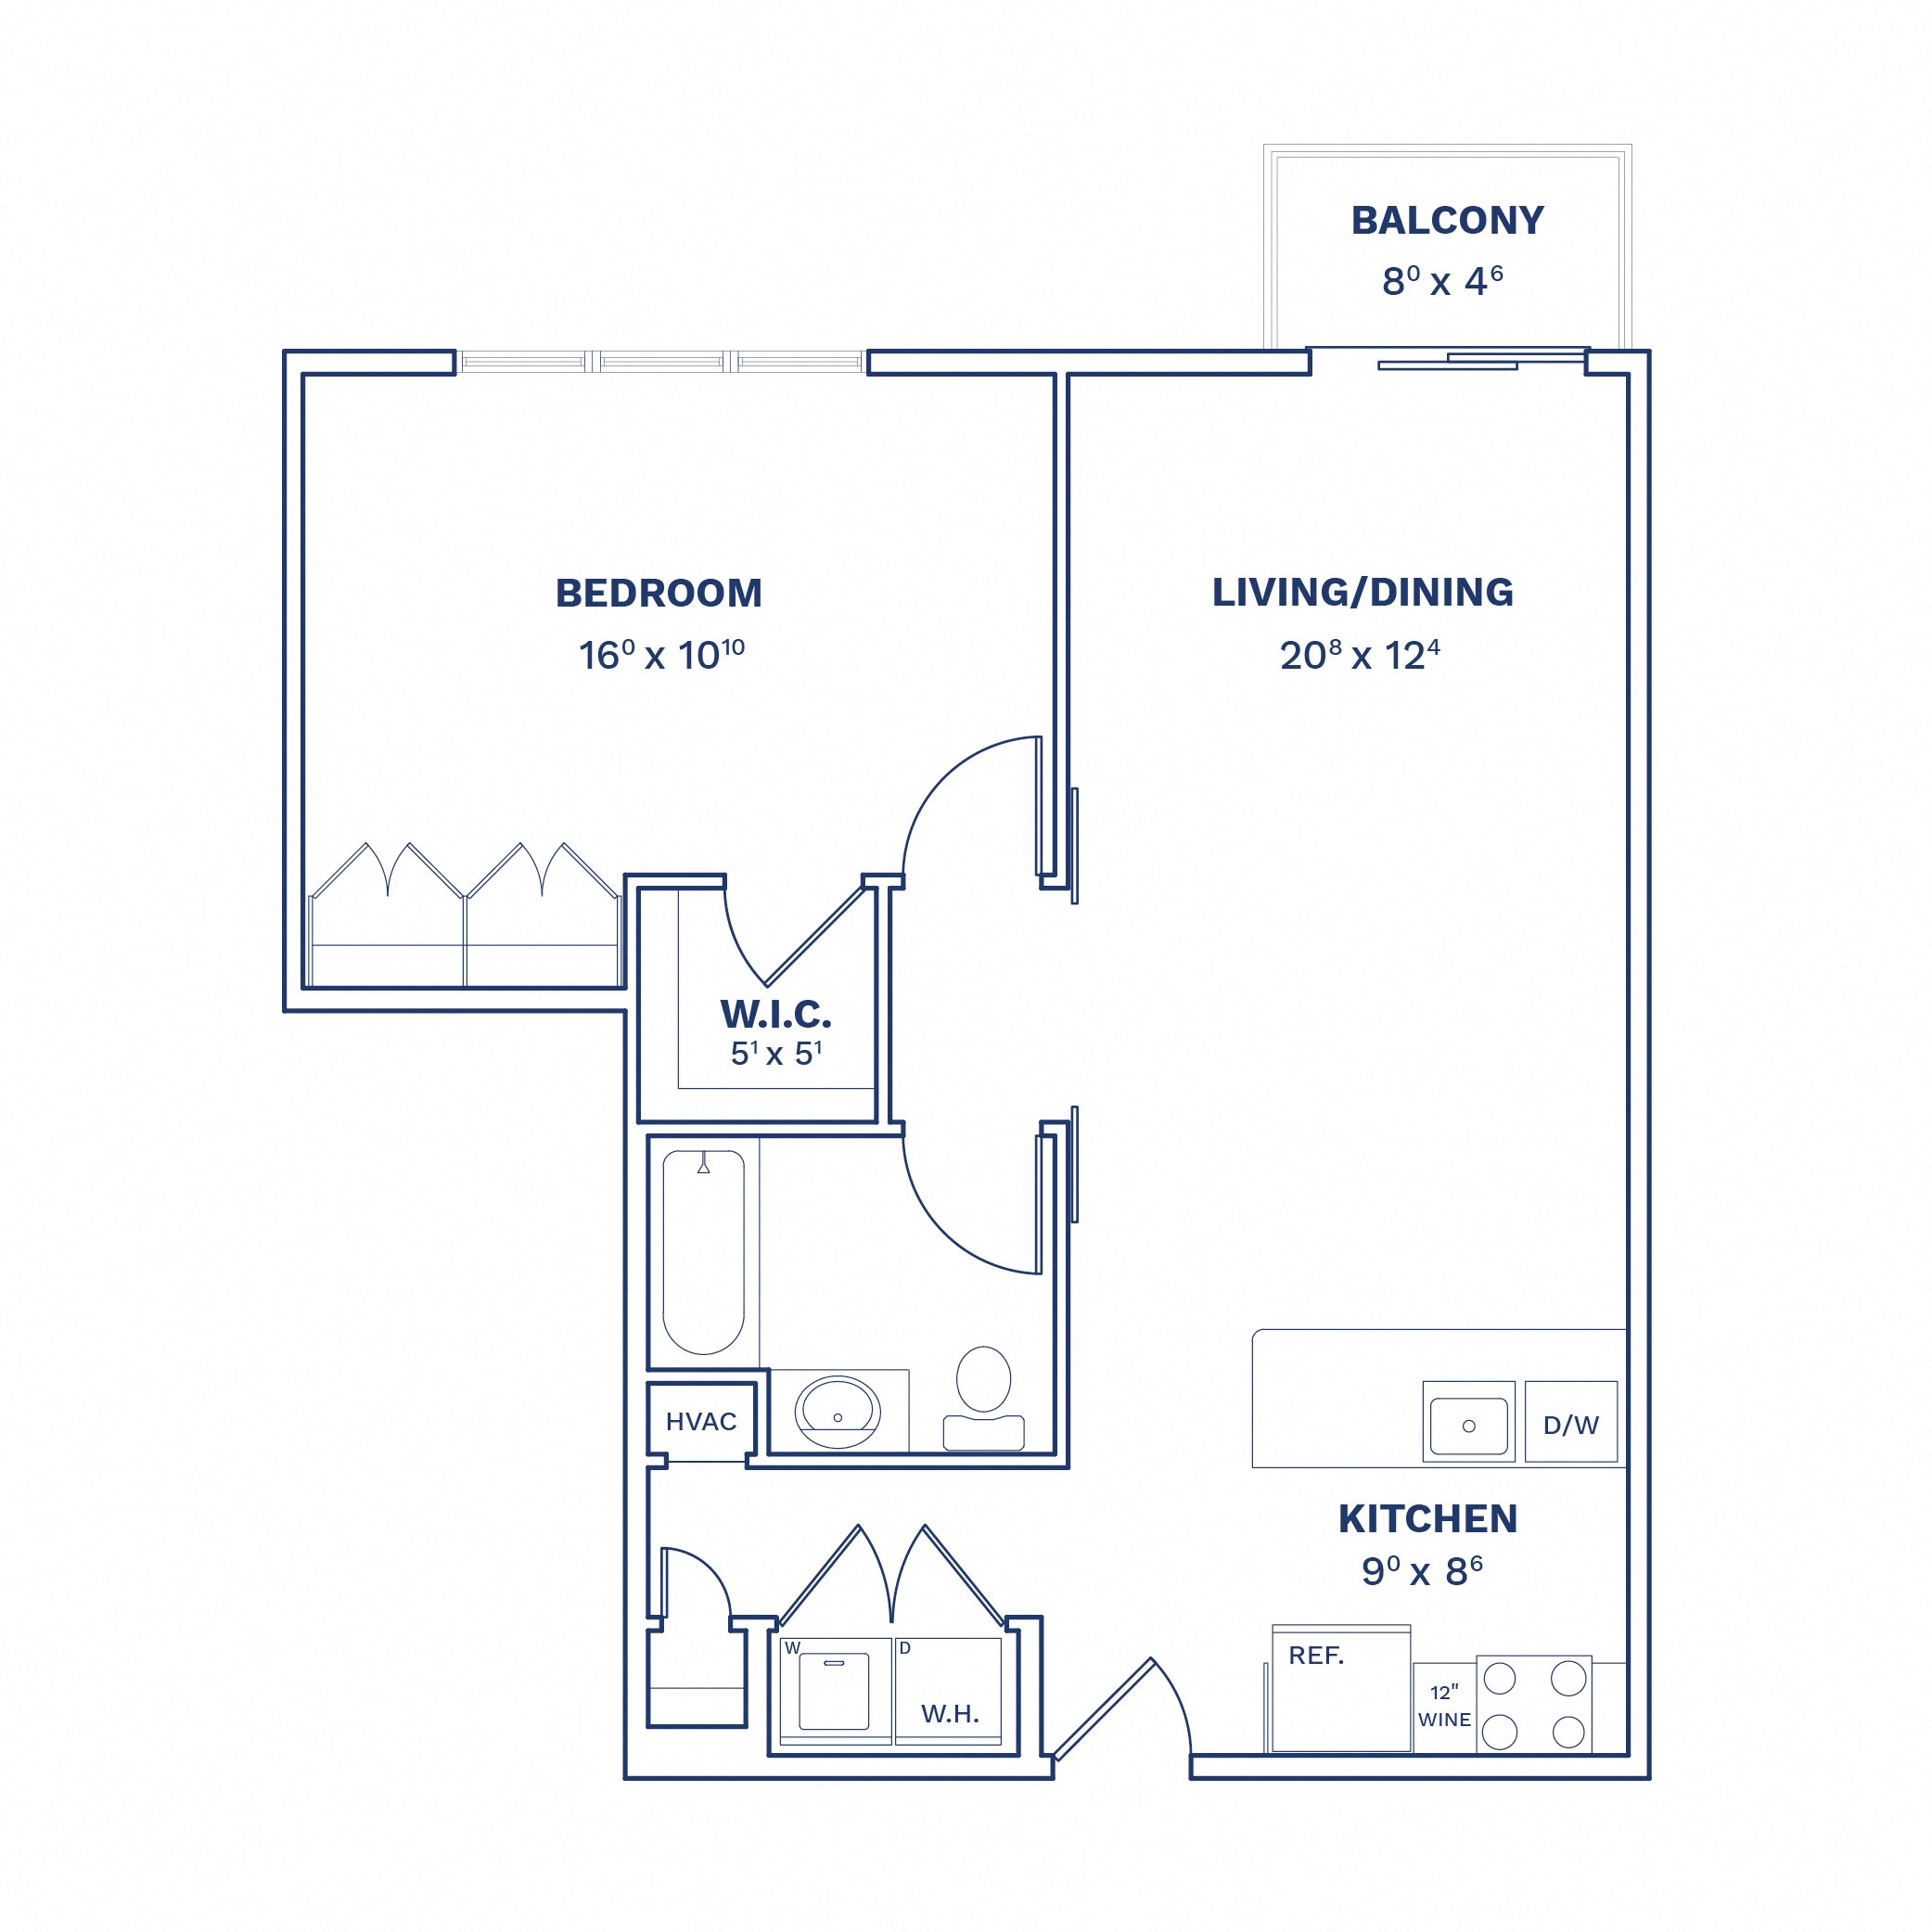 Floorplan of Unit 1 Bed/1 Bath-A3